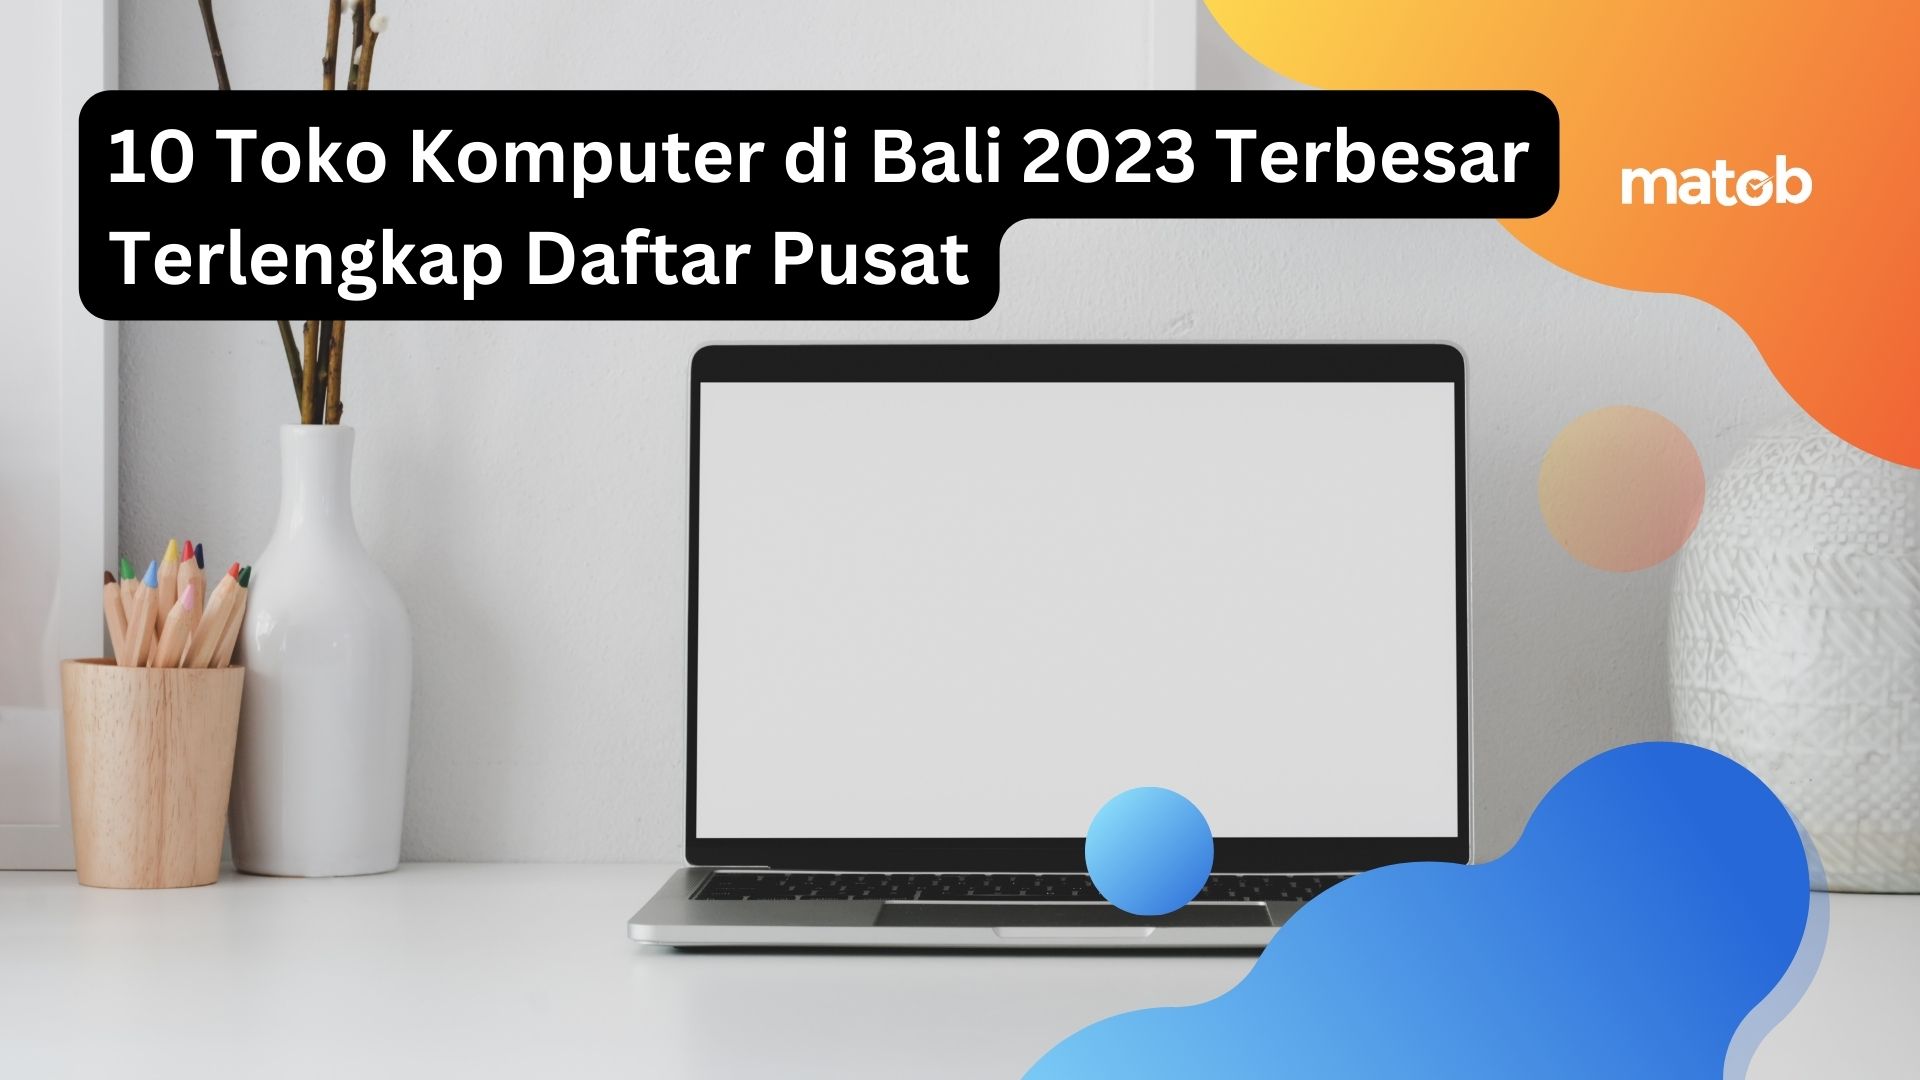 10 Toko Komputer di Bali 2023 Terbesar Terlengkap Daftar Pusat